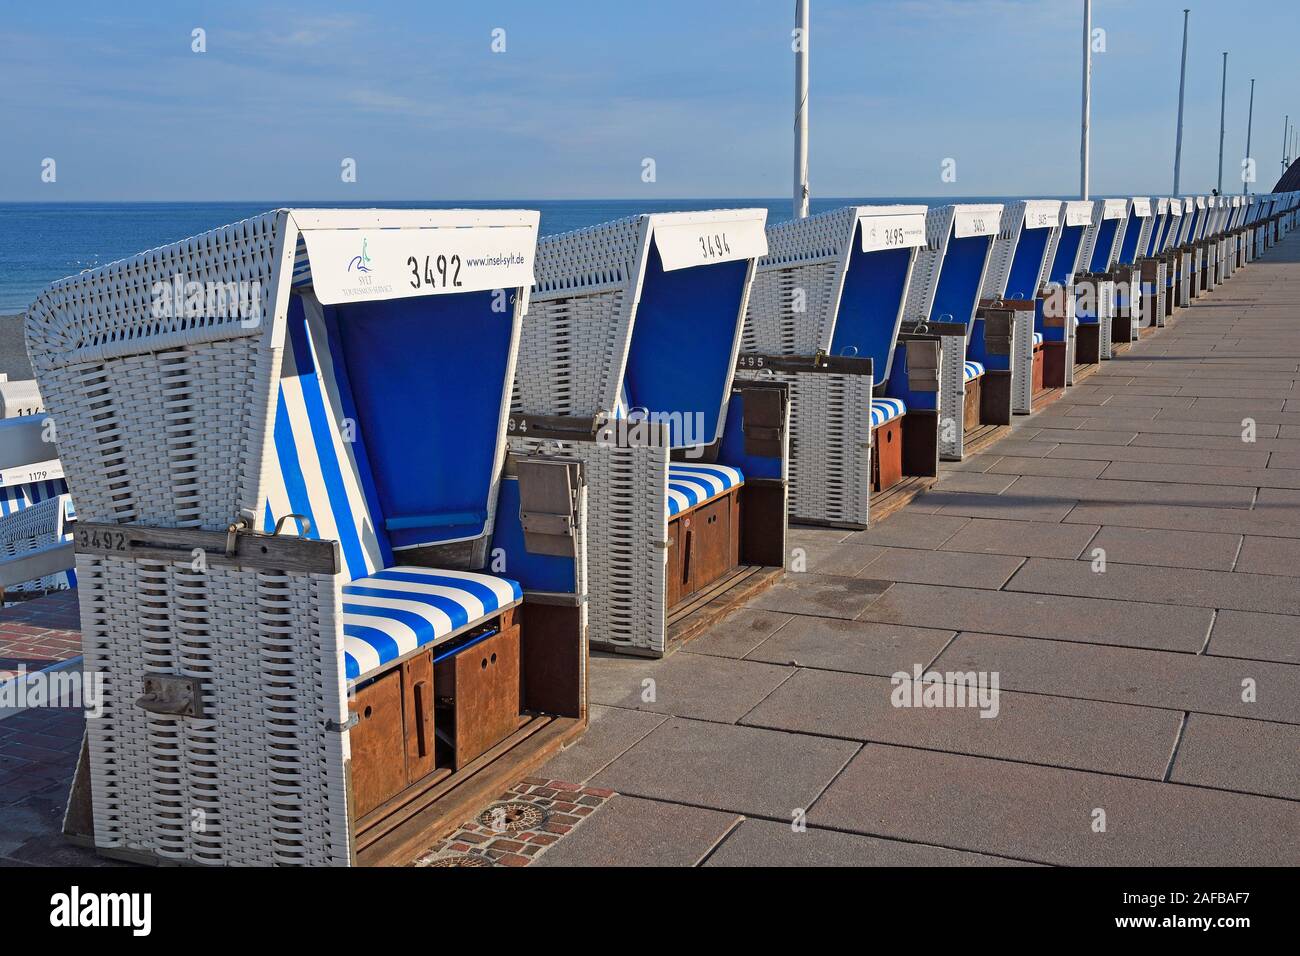 endlose Reihe von Strandkörben an der Strandpromenade von  Westerland, Sylt, nordfriesische Inseln, Nordfriesland, Schleswig-Holstein, Deutschland Stock Photo